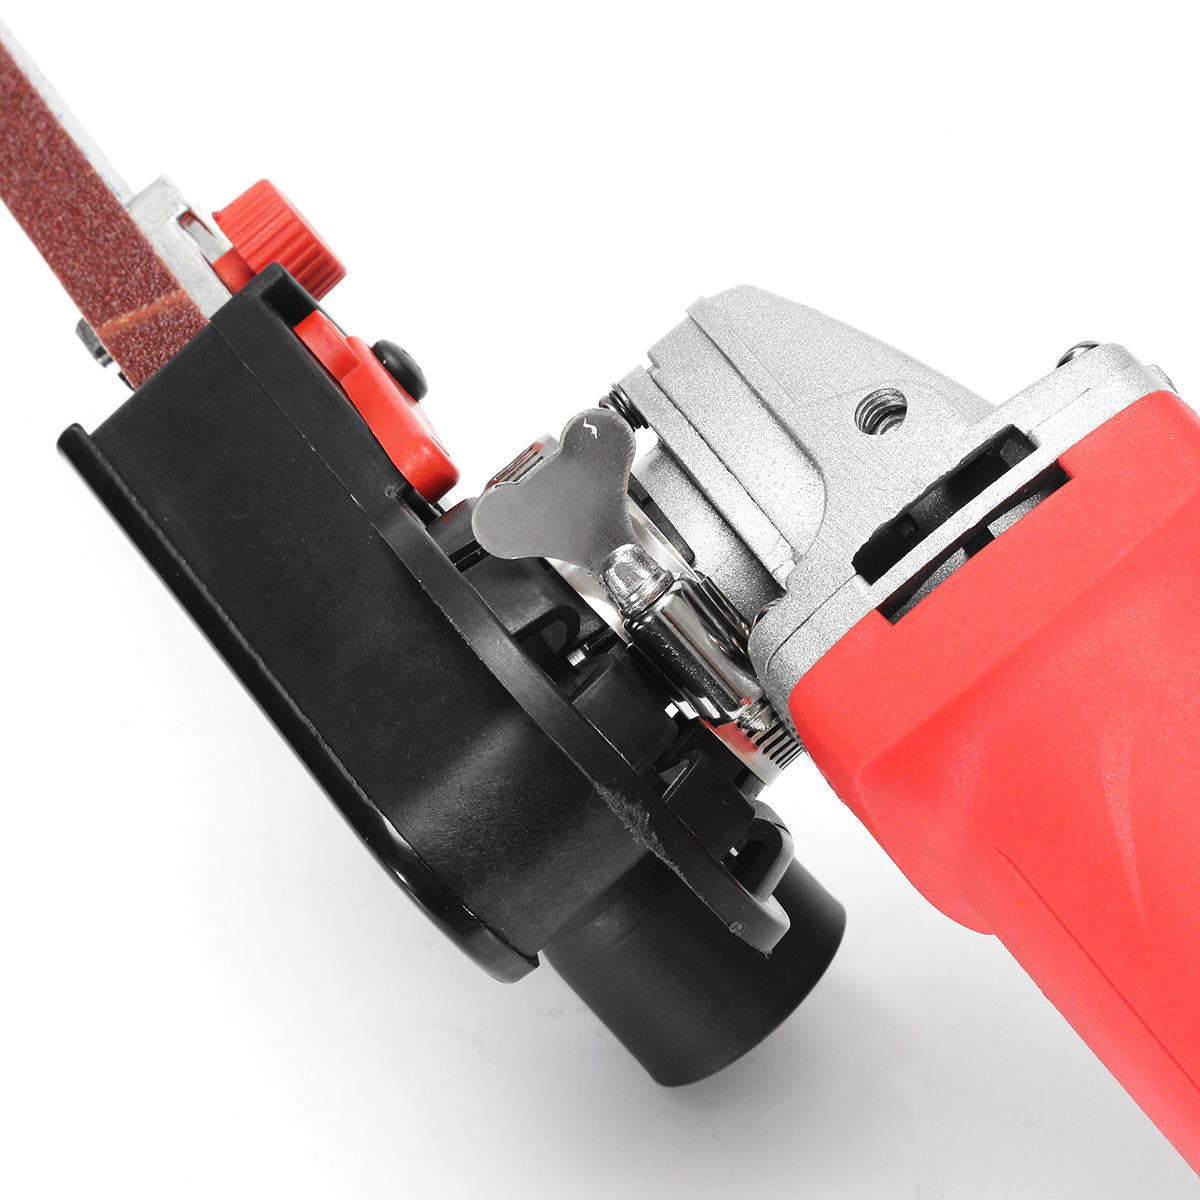 Sander Sanding Belt Adapter For Electric Angle Grinder Abrasive Belt Cutting Grinding